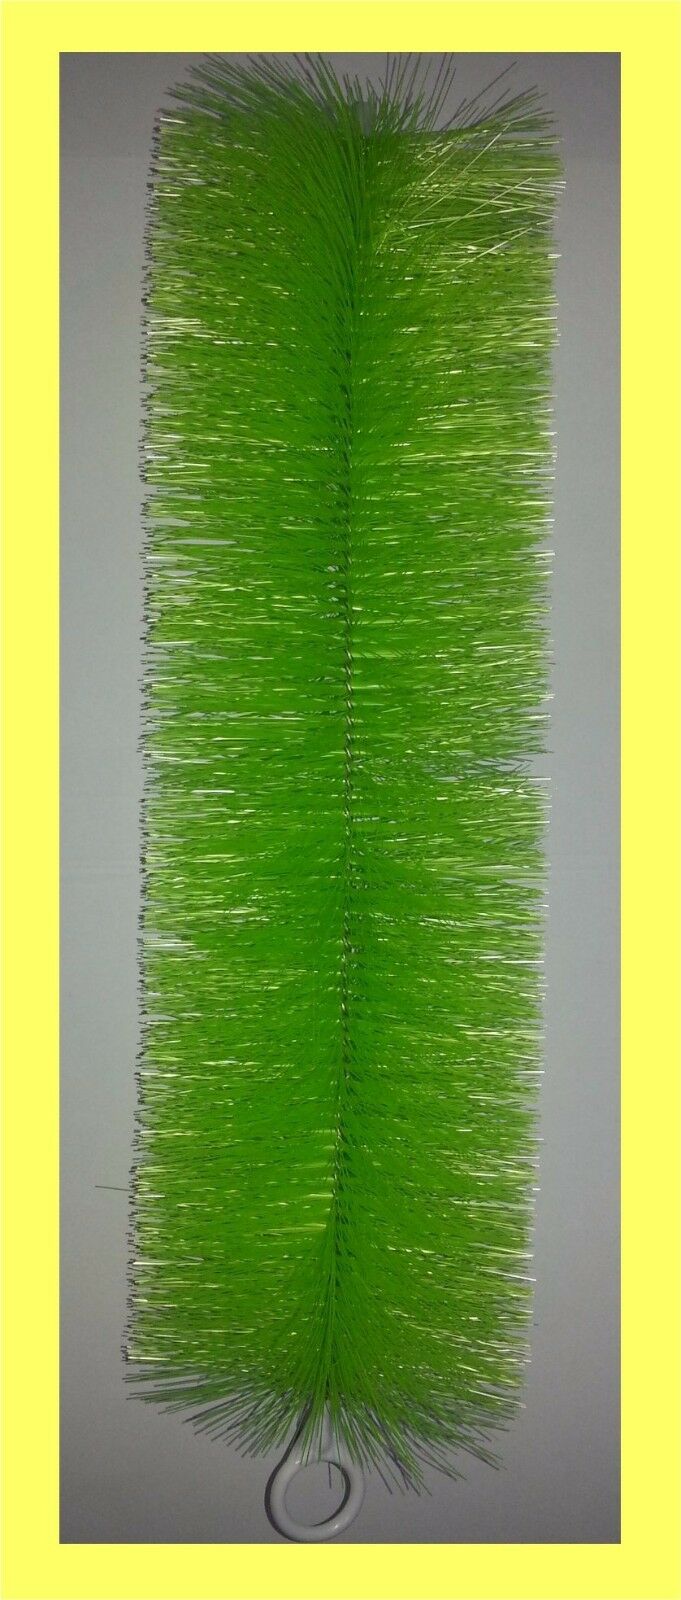 Filterbürste grün fein 60 cm lang Teichbürste Koiteich Teichfilter frachtfrei 